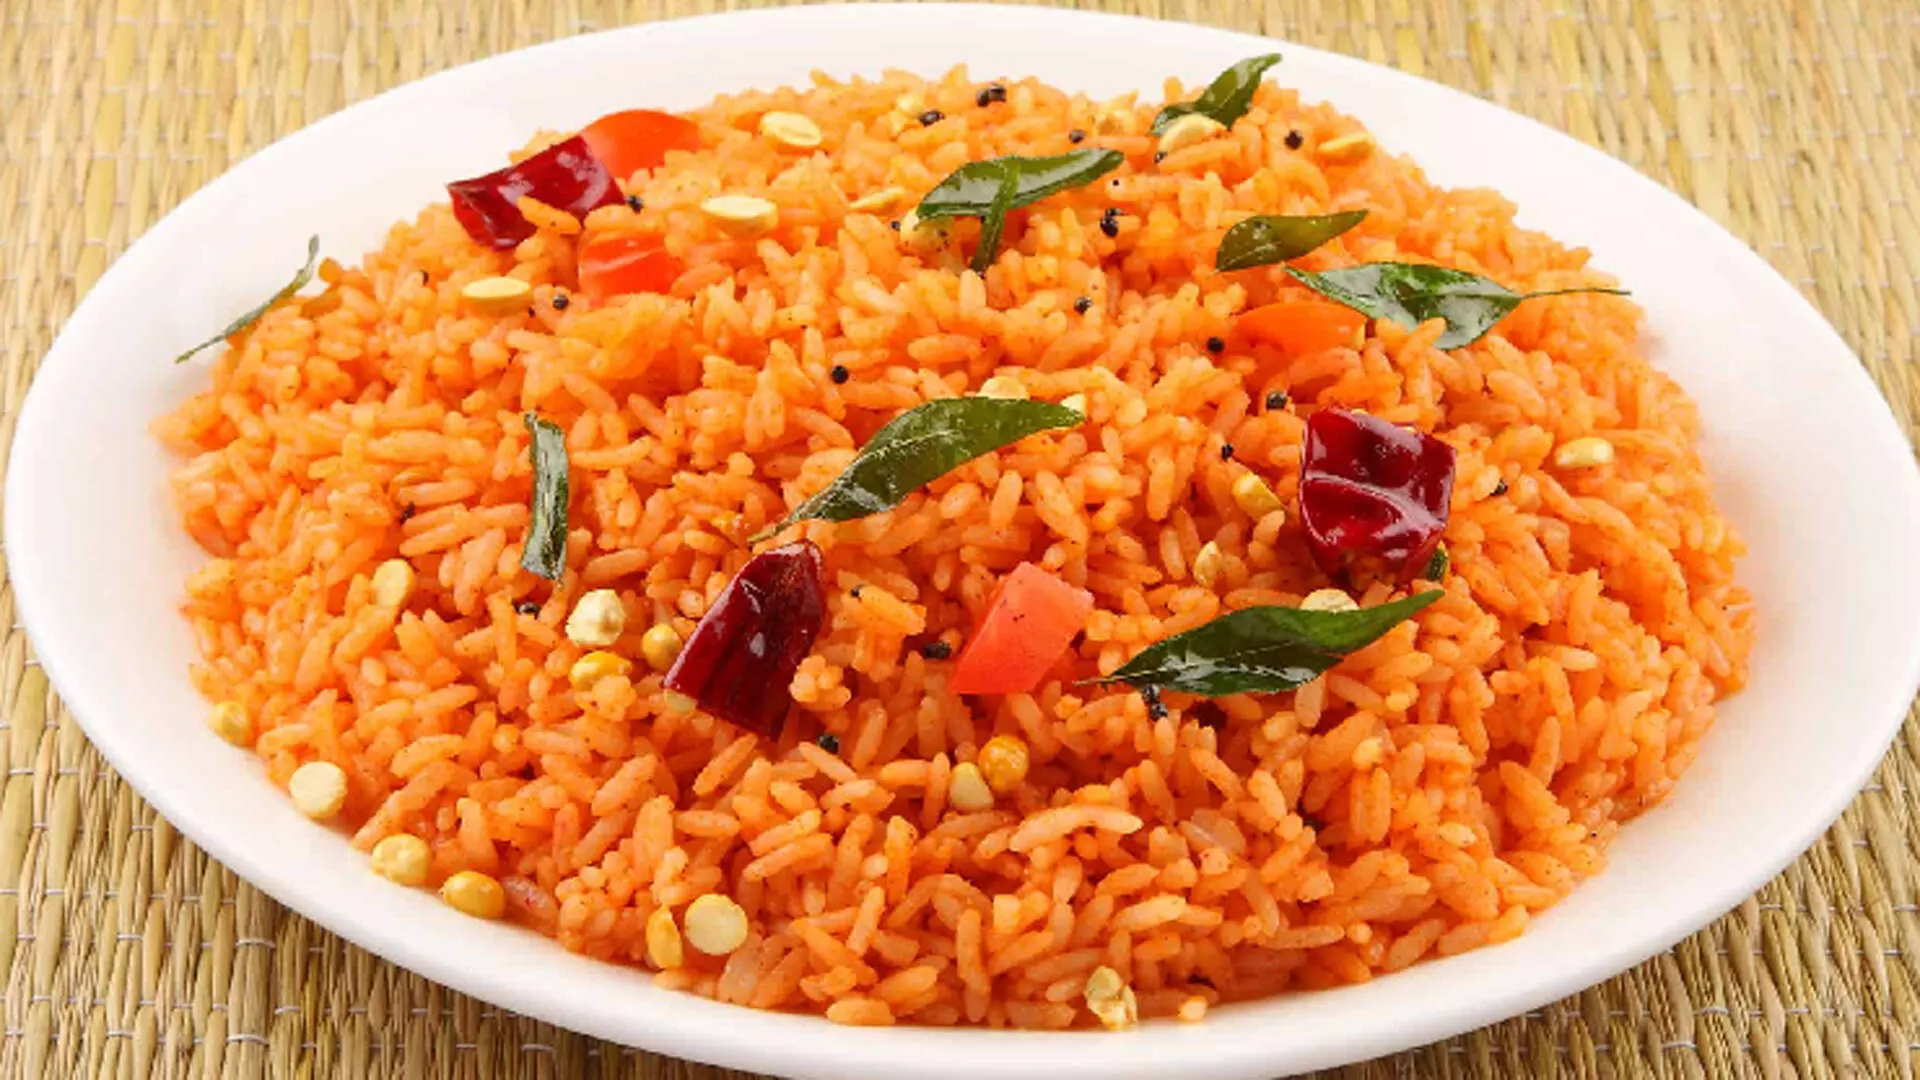 टमाटर चावल का स्वाद ही अलग है, एक बार खाने के बाद बार-बार मांगेंगे